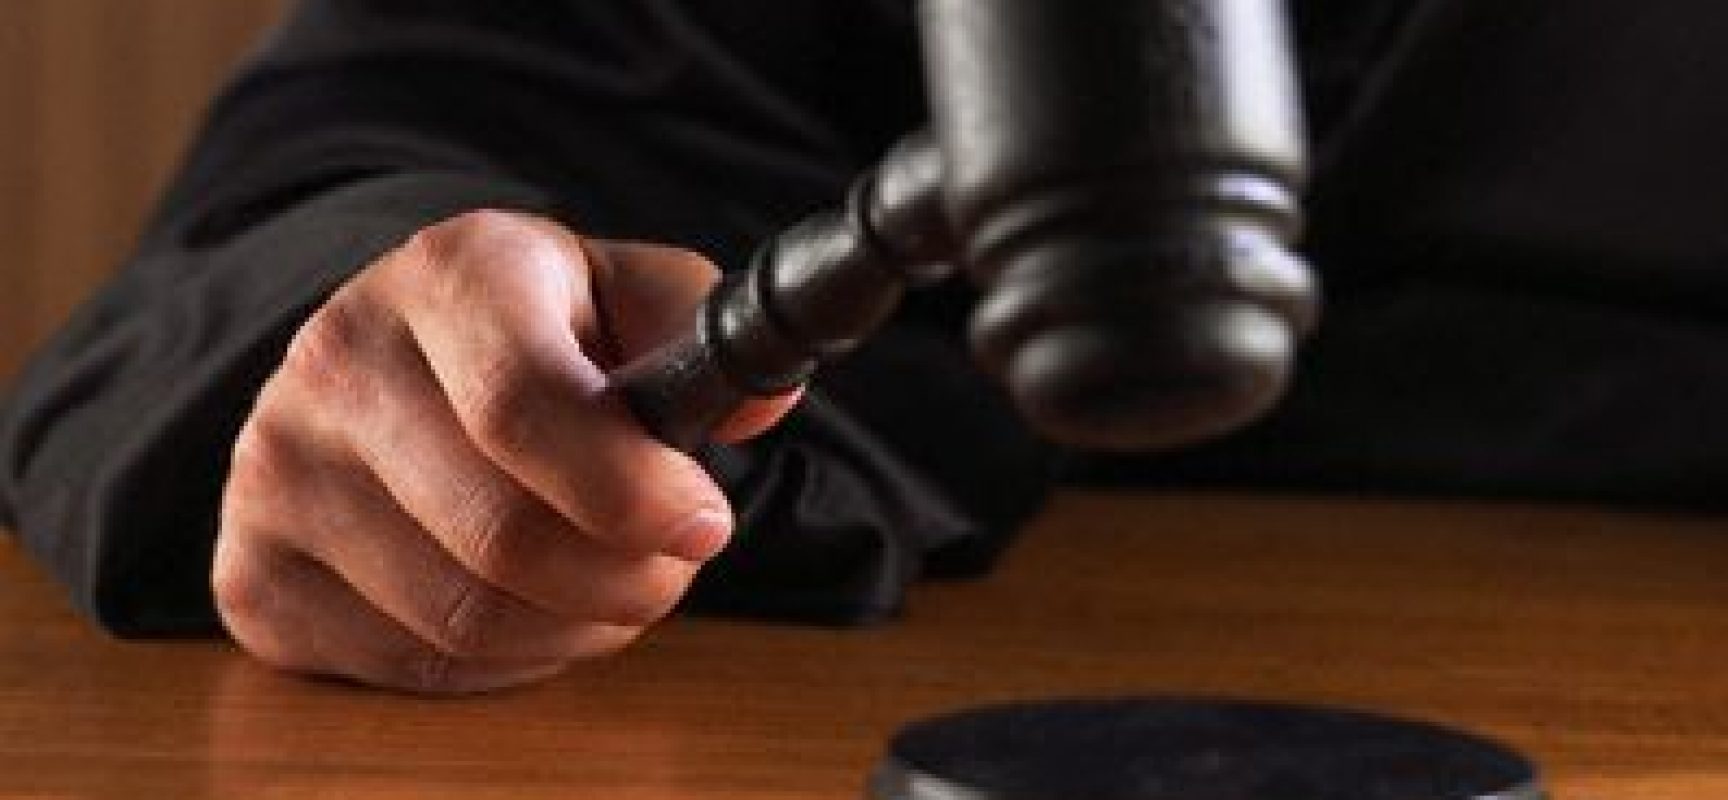 Grupo de trabalho aprova formação de “juízes sem rosto” para tratar de organizações criminosas